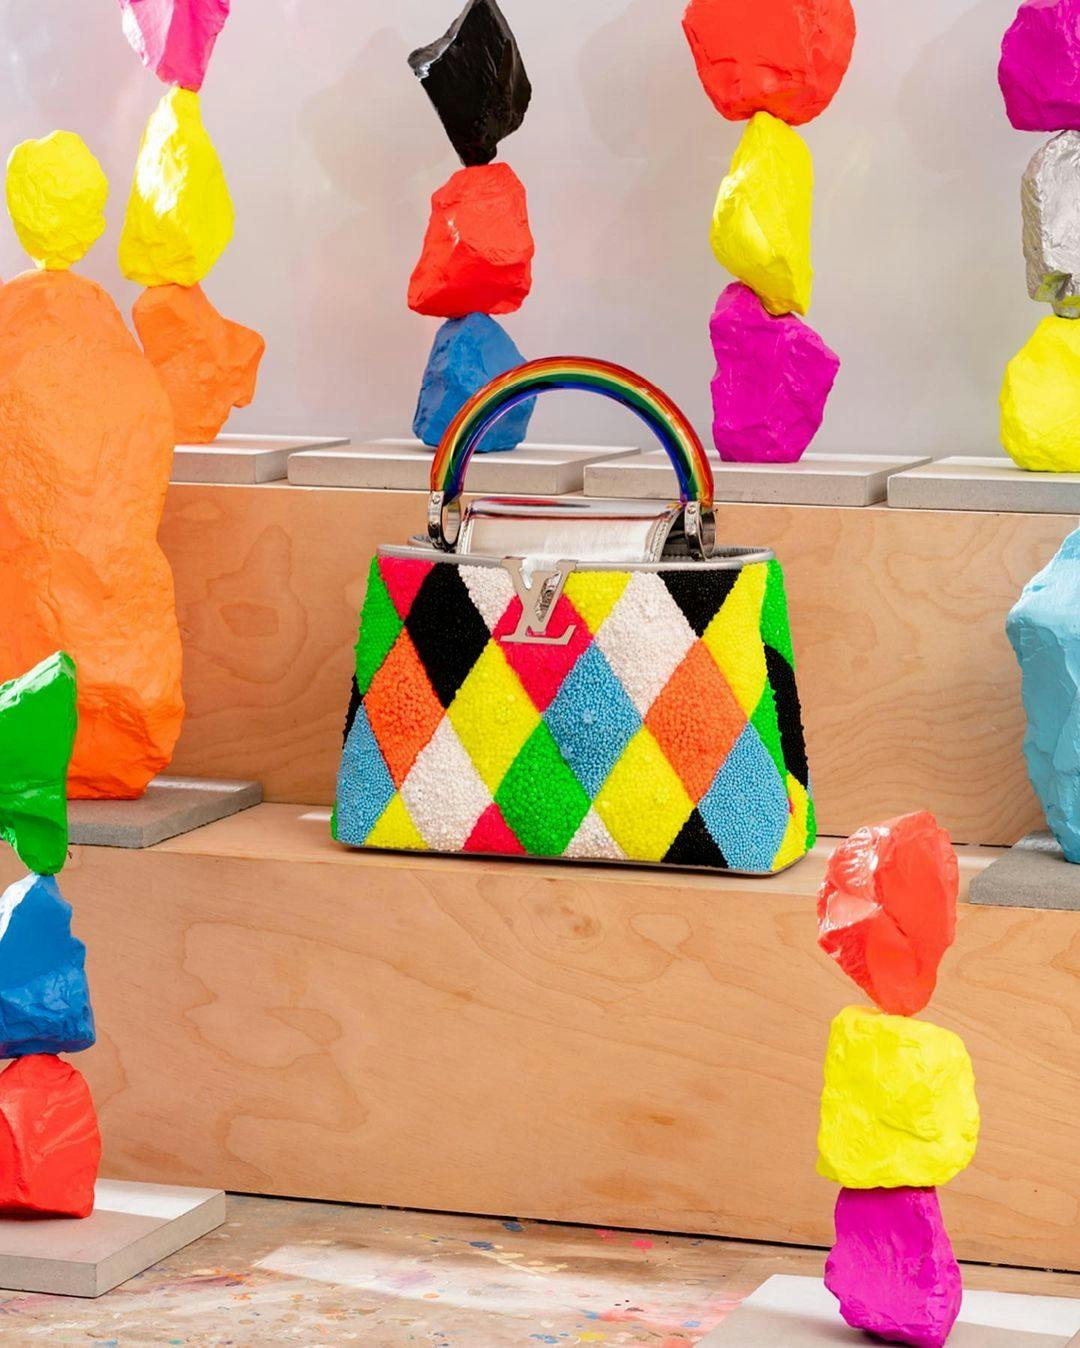 Louis Vuitton's Capucines Handbag Gets a Museum-Worthy Update